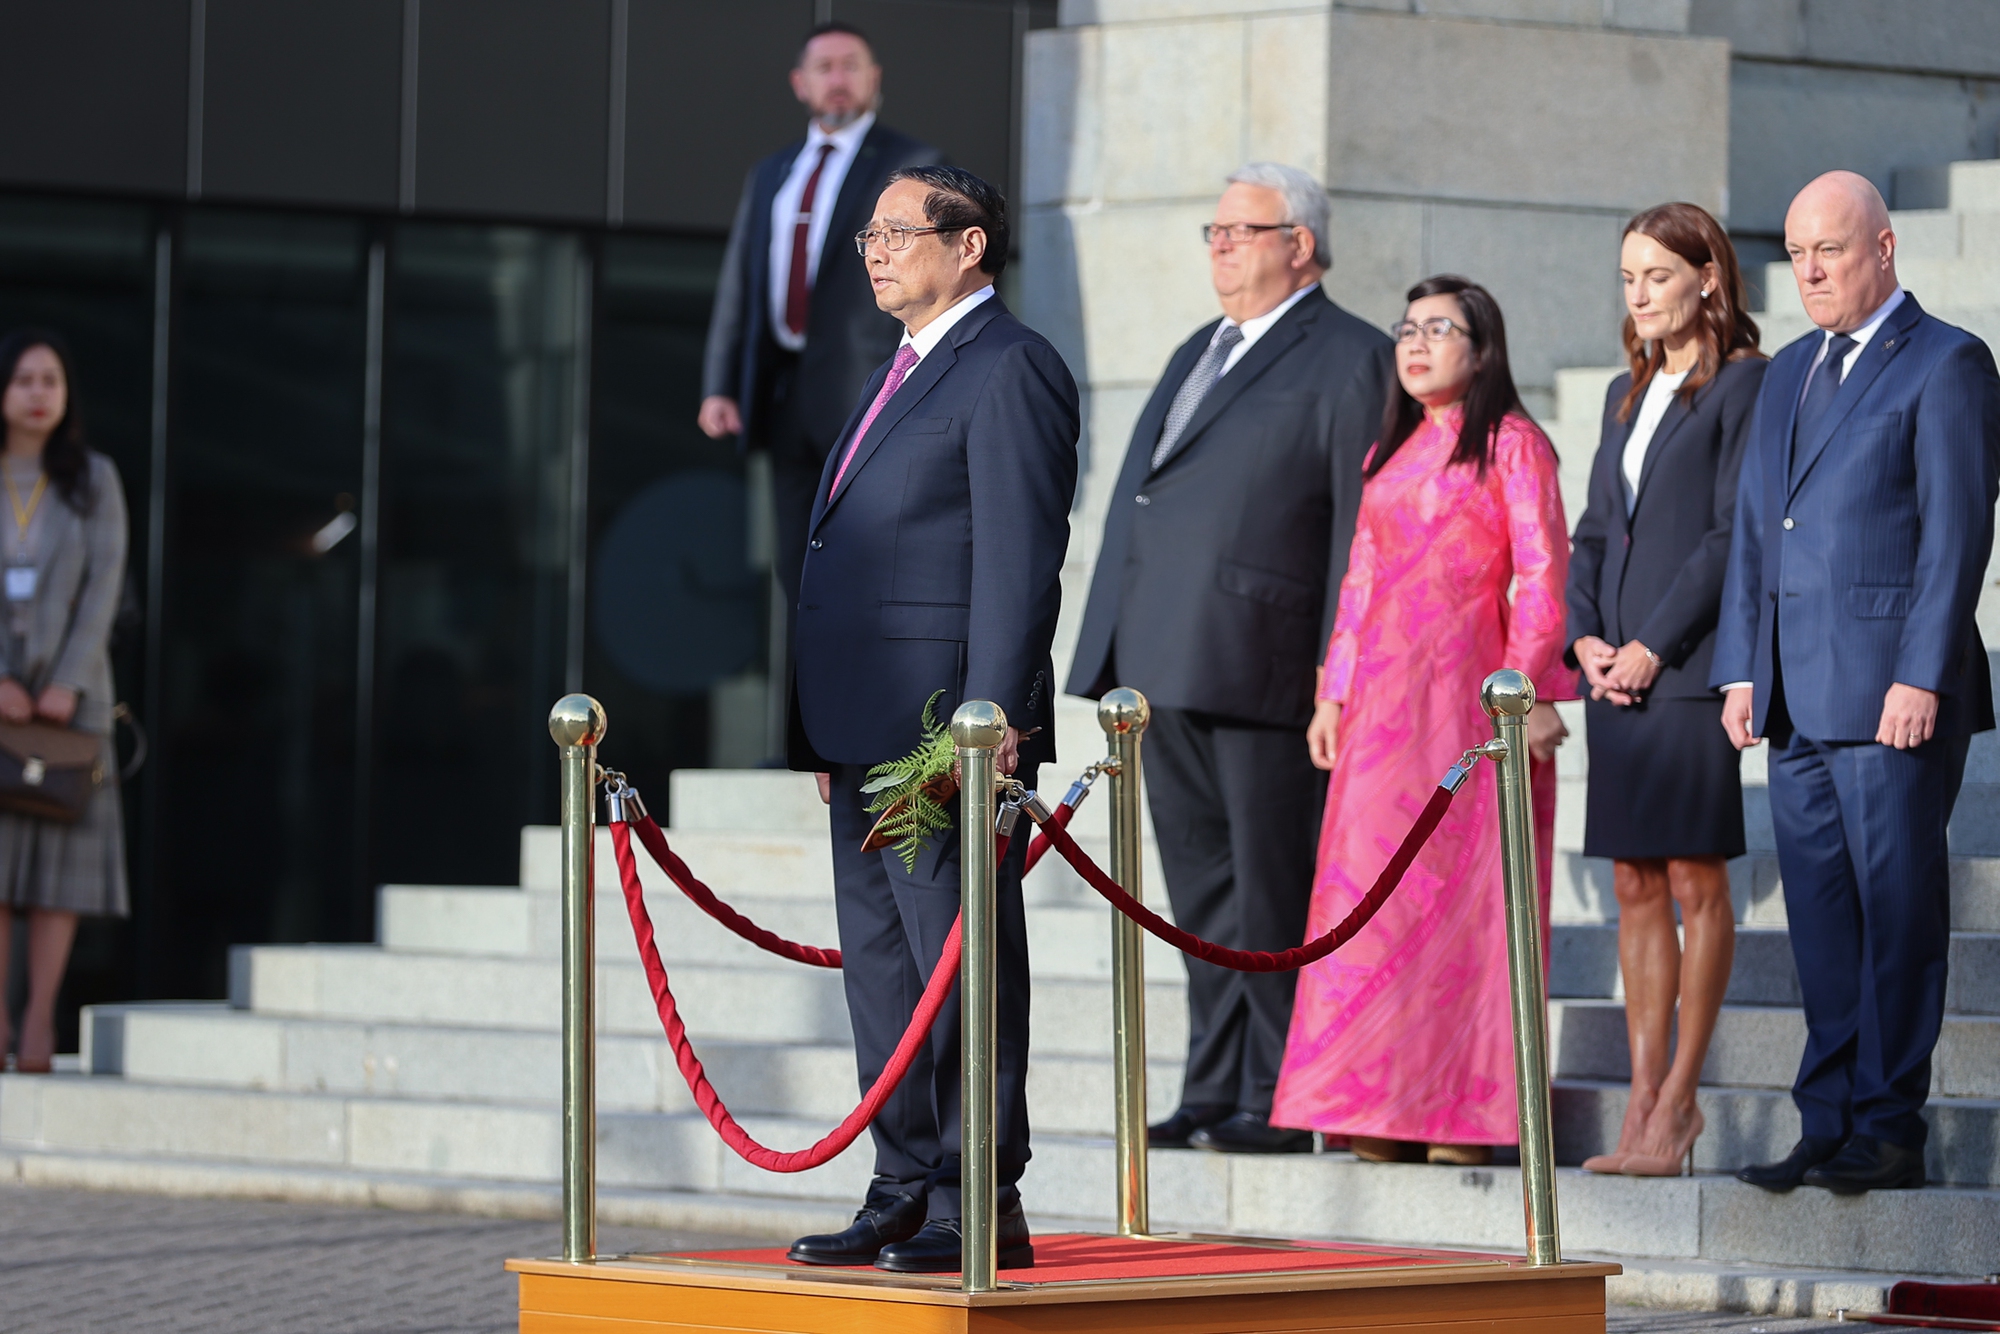 Thủ tướng Chính phủ trên bục danh dự trong nghi thức cử quốc thiều Việt Nam và kéo quốc kỳ Việt Nam - Ảnh: VGP/Nhật Bắc